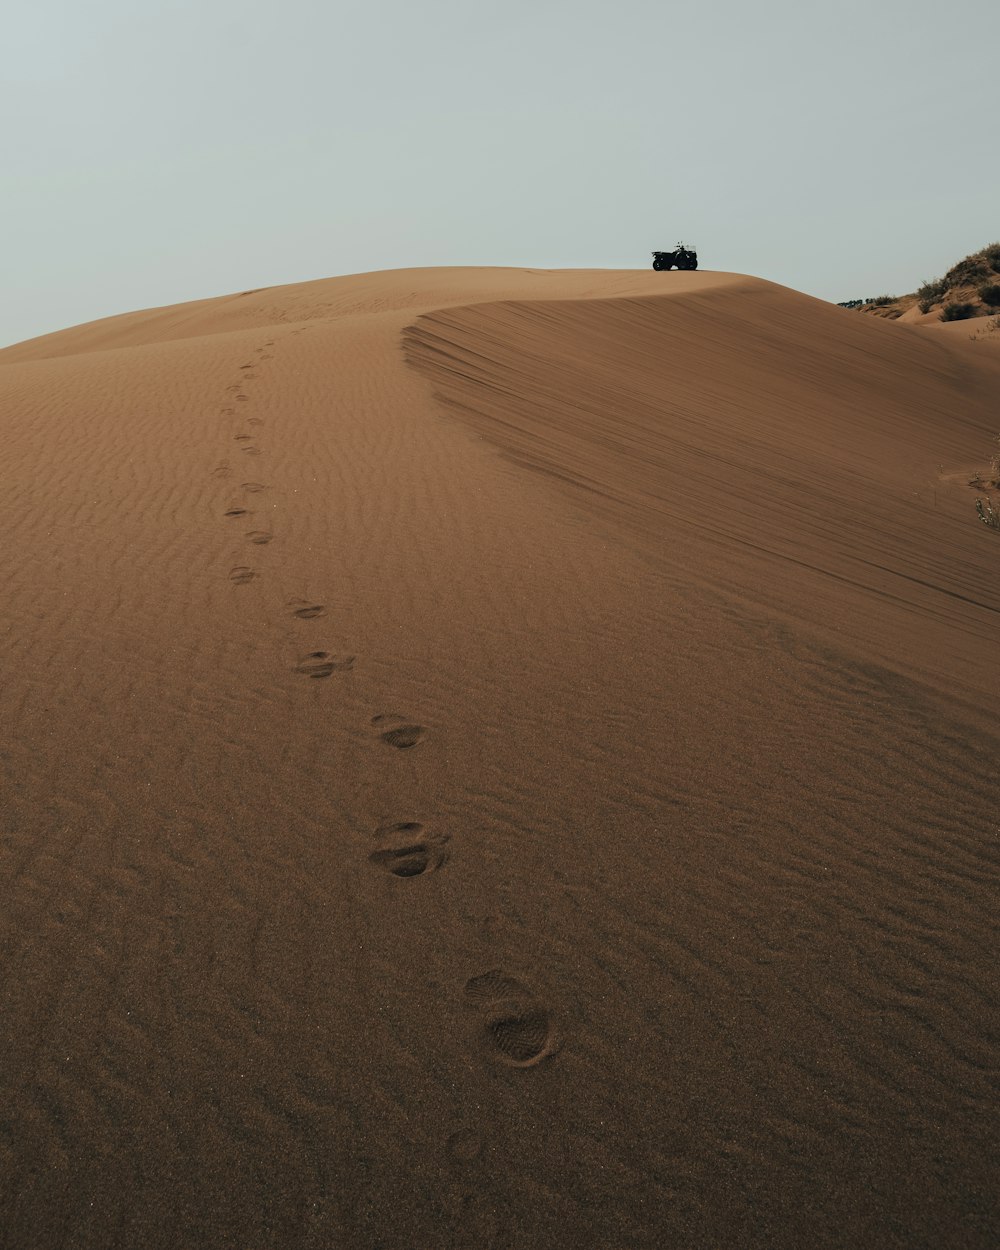 Ein Jeep fährt einen sandigen Hügel mit Fußabdrücken im Sand hinunter